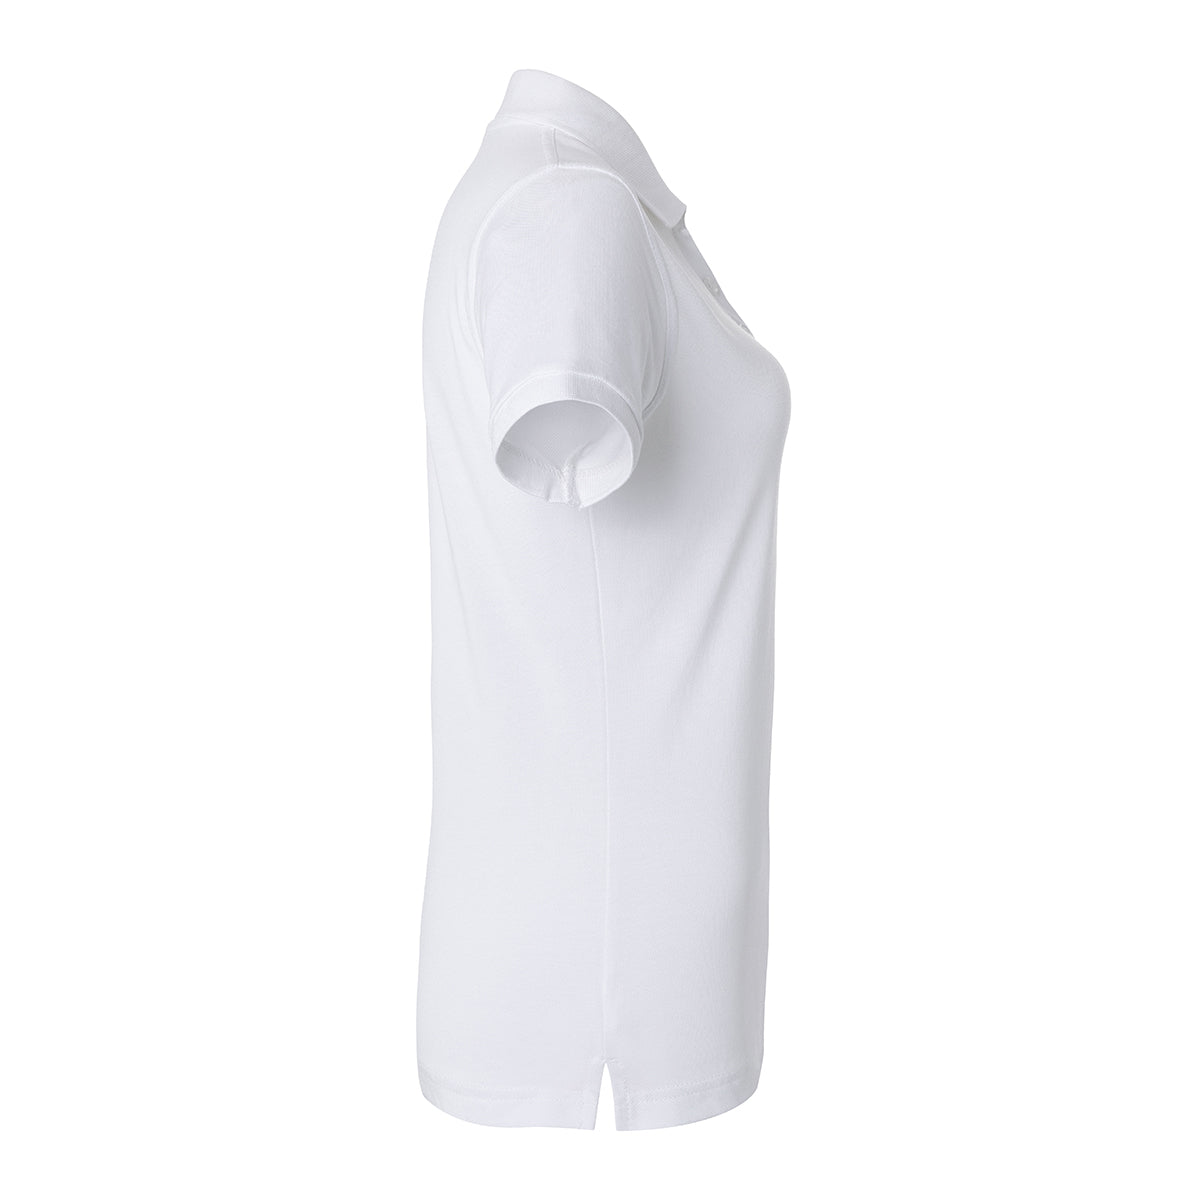 (6 stk) Karlowsky - Workwear Polo Shirt Basic til Damer - Hvid - Størrelse: L